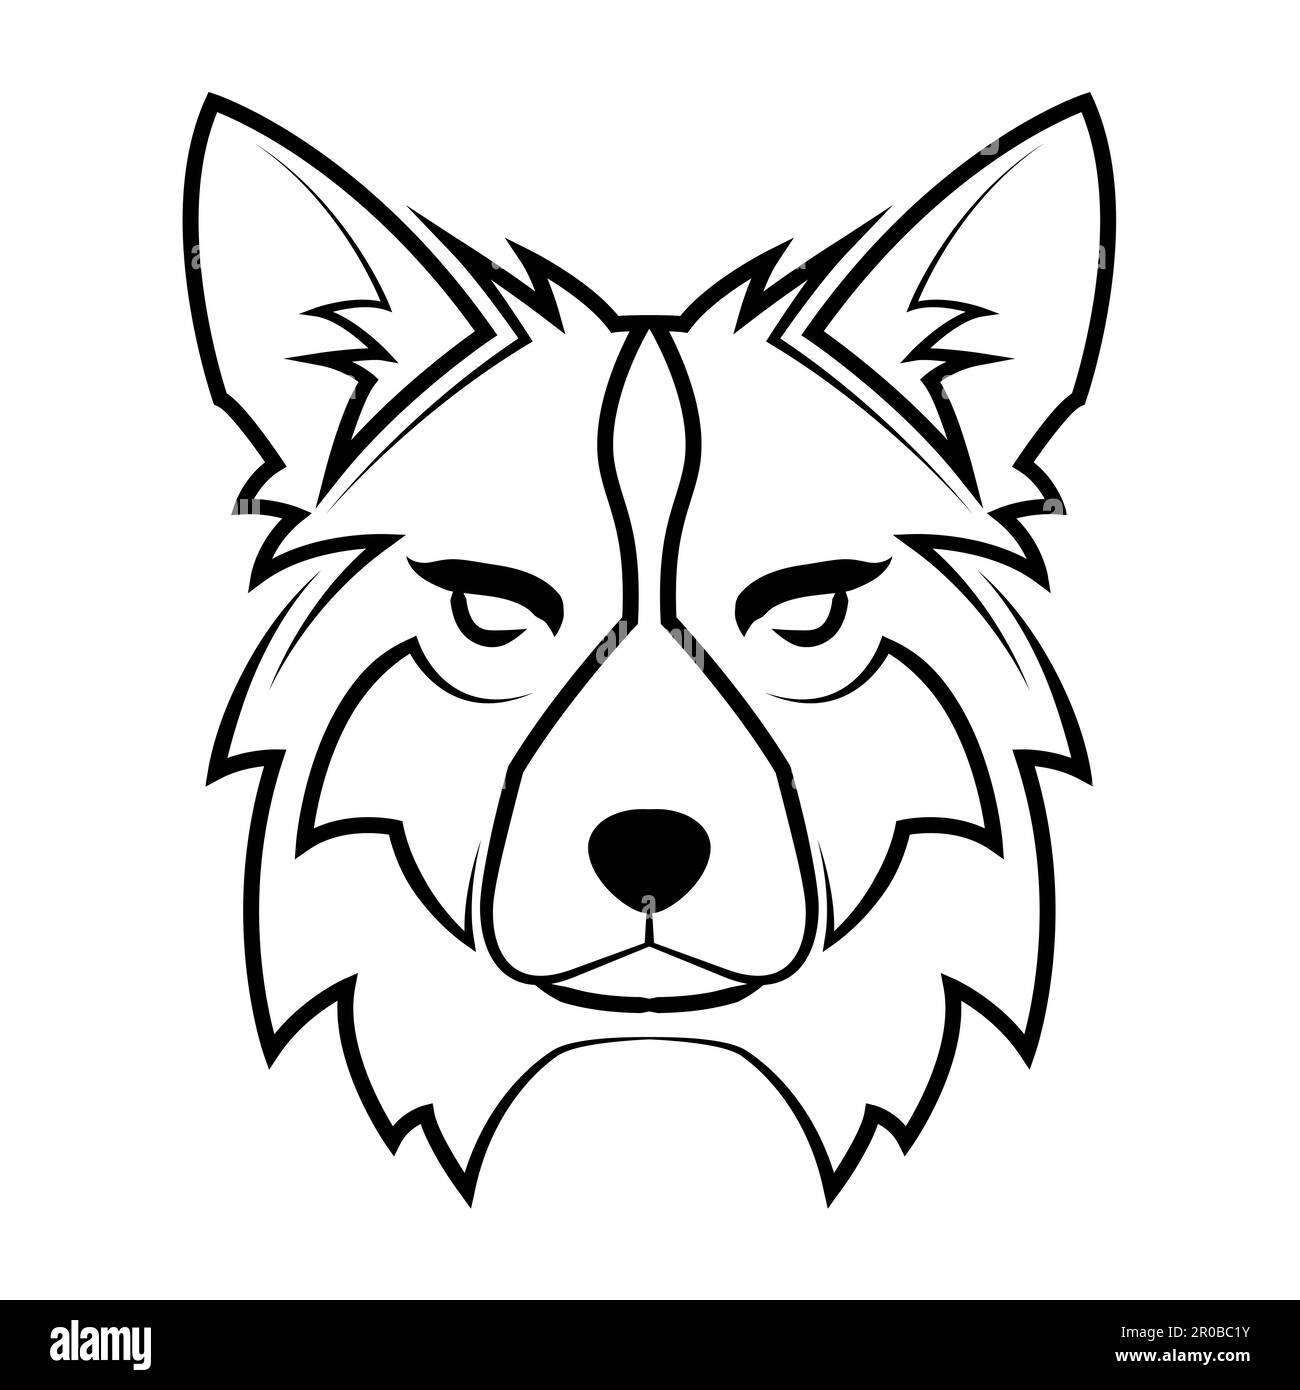 Art noir et blanc de la tête de loup. Bon usage pour symbole, mascotte, icône, avatar, tatouage, T-shirt, logo ou tout autre motif Illustration de Vecteur